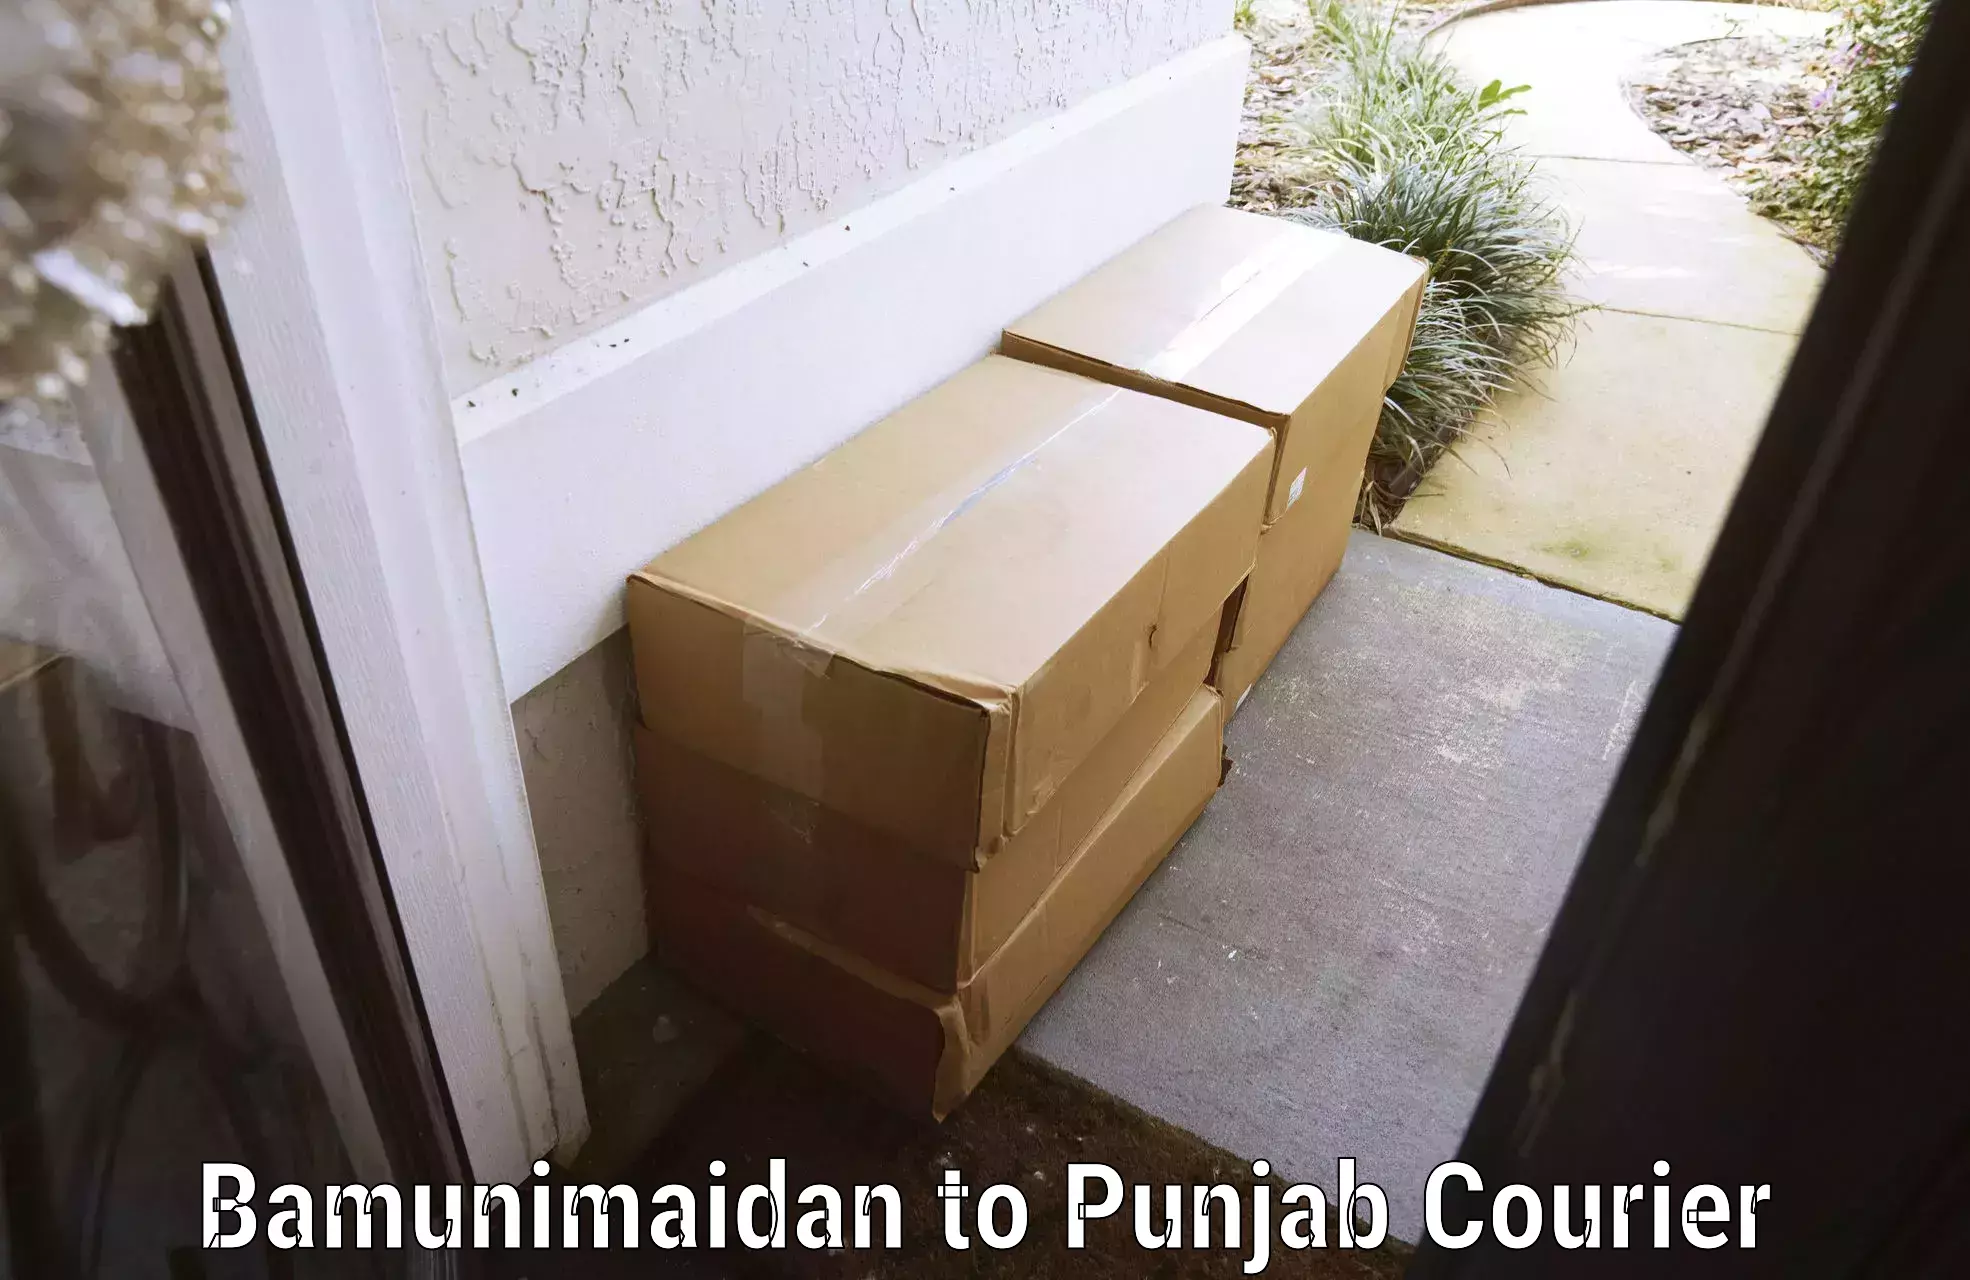 Simplified luggage transport in Bamunimaidan to Punjab